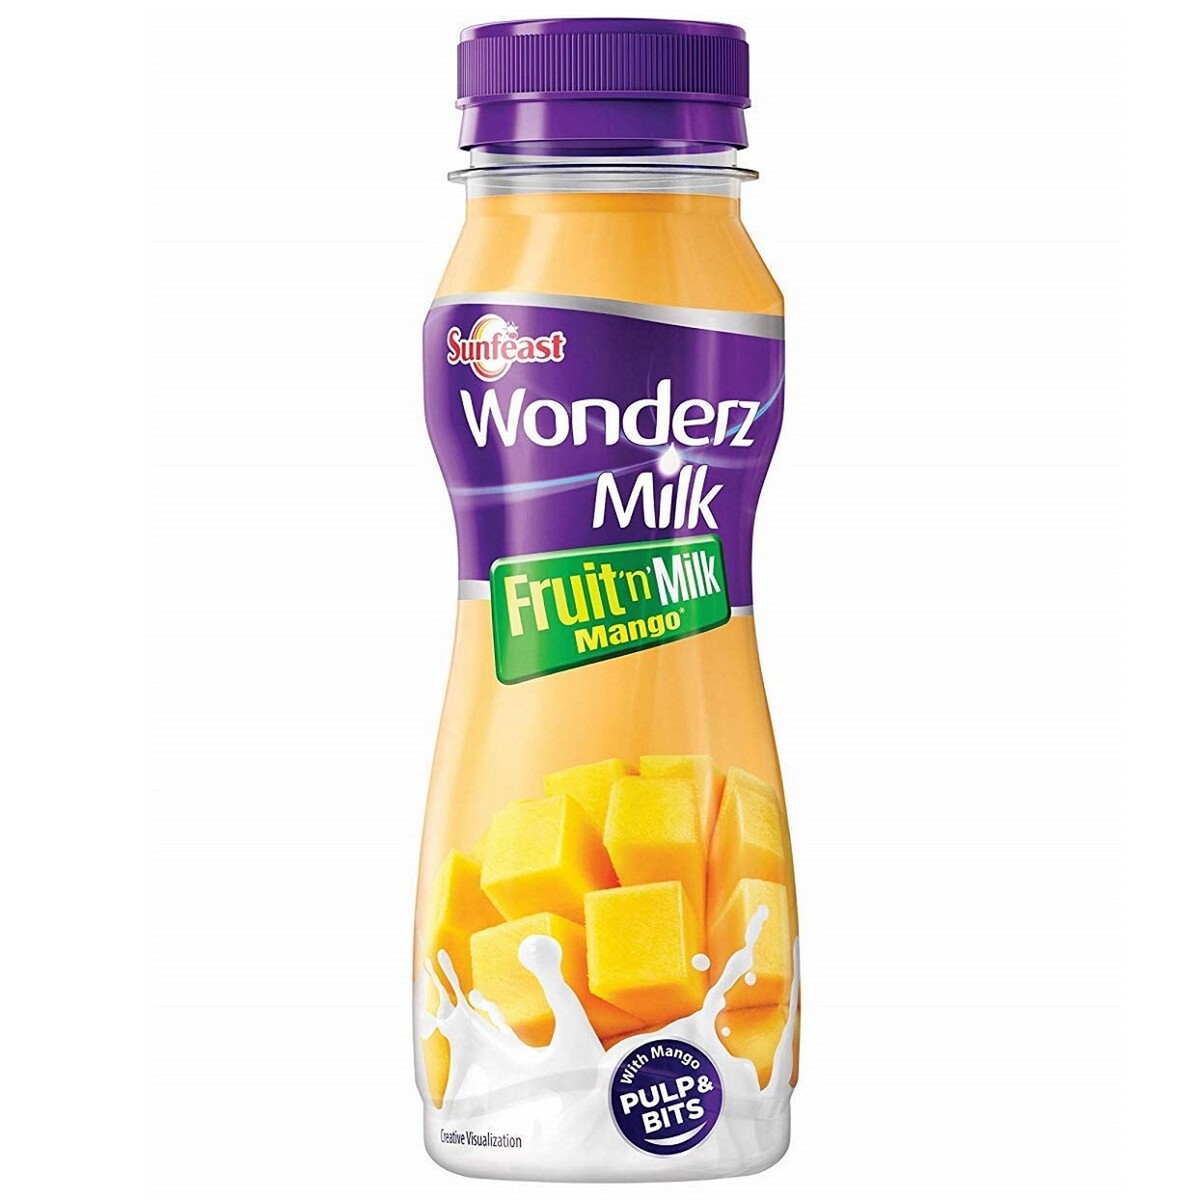 SunFeast Wonderz Milk Fruit 'n' Mango 200ml